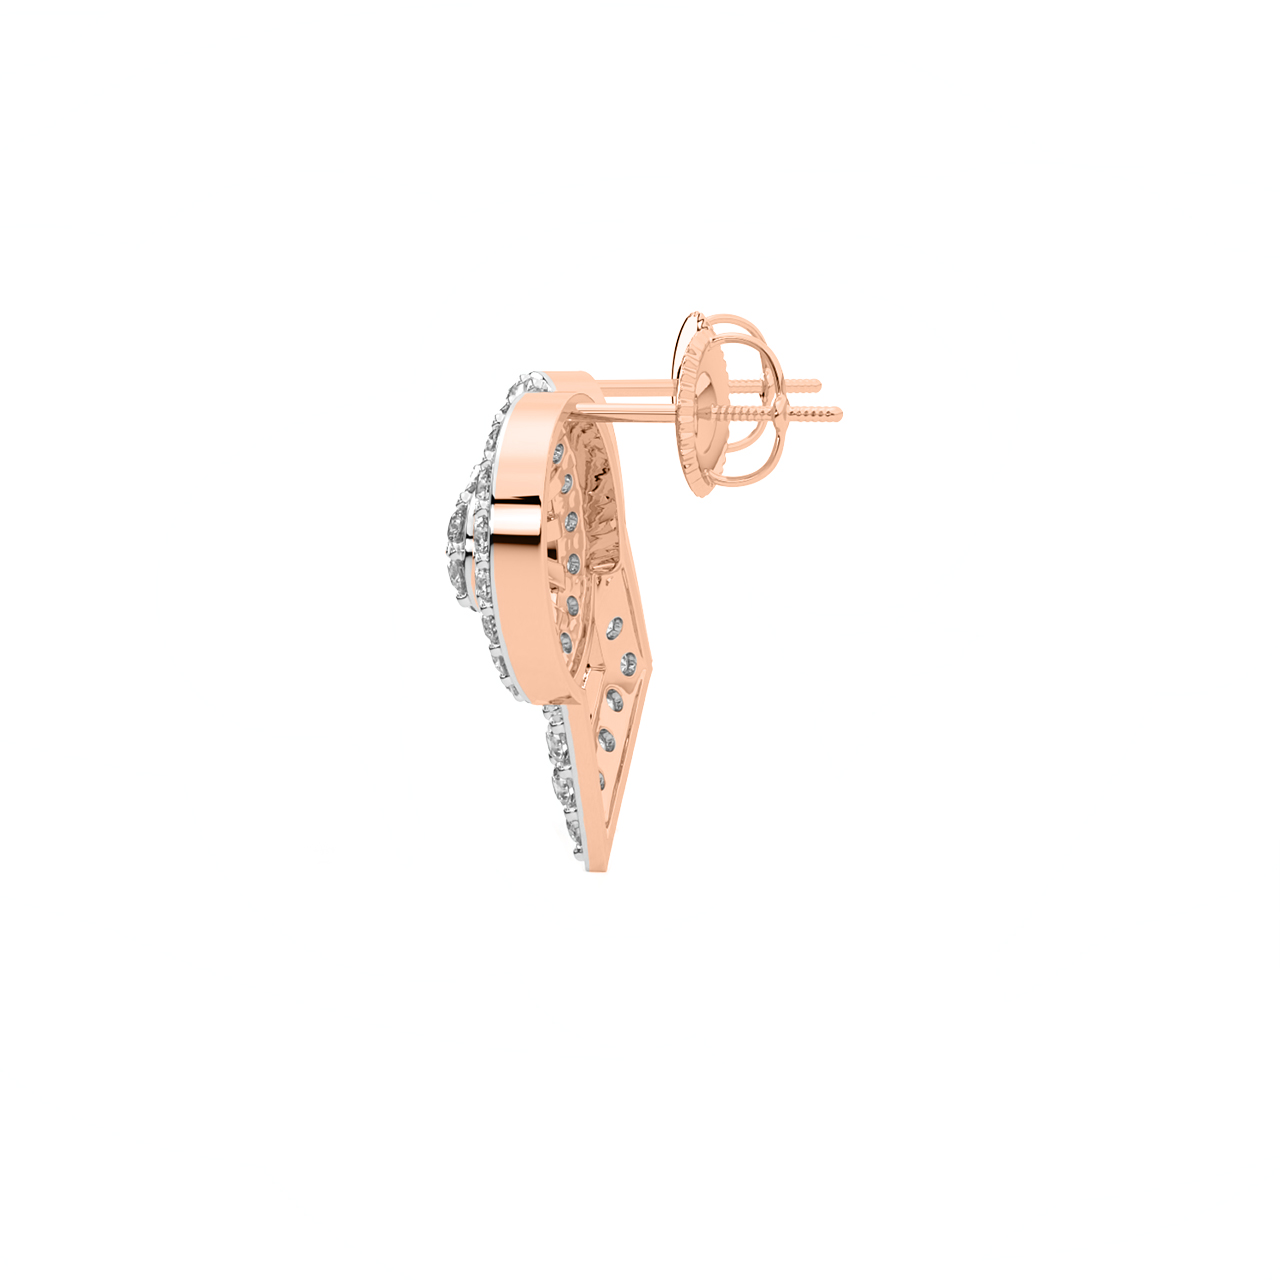 Divsha Round Diamond Stud Earrings